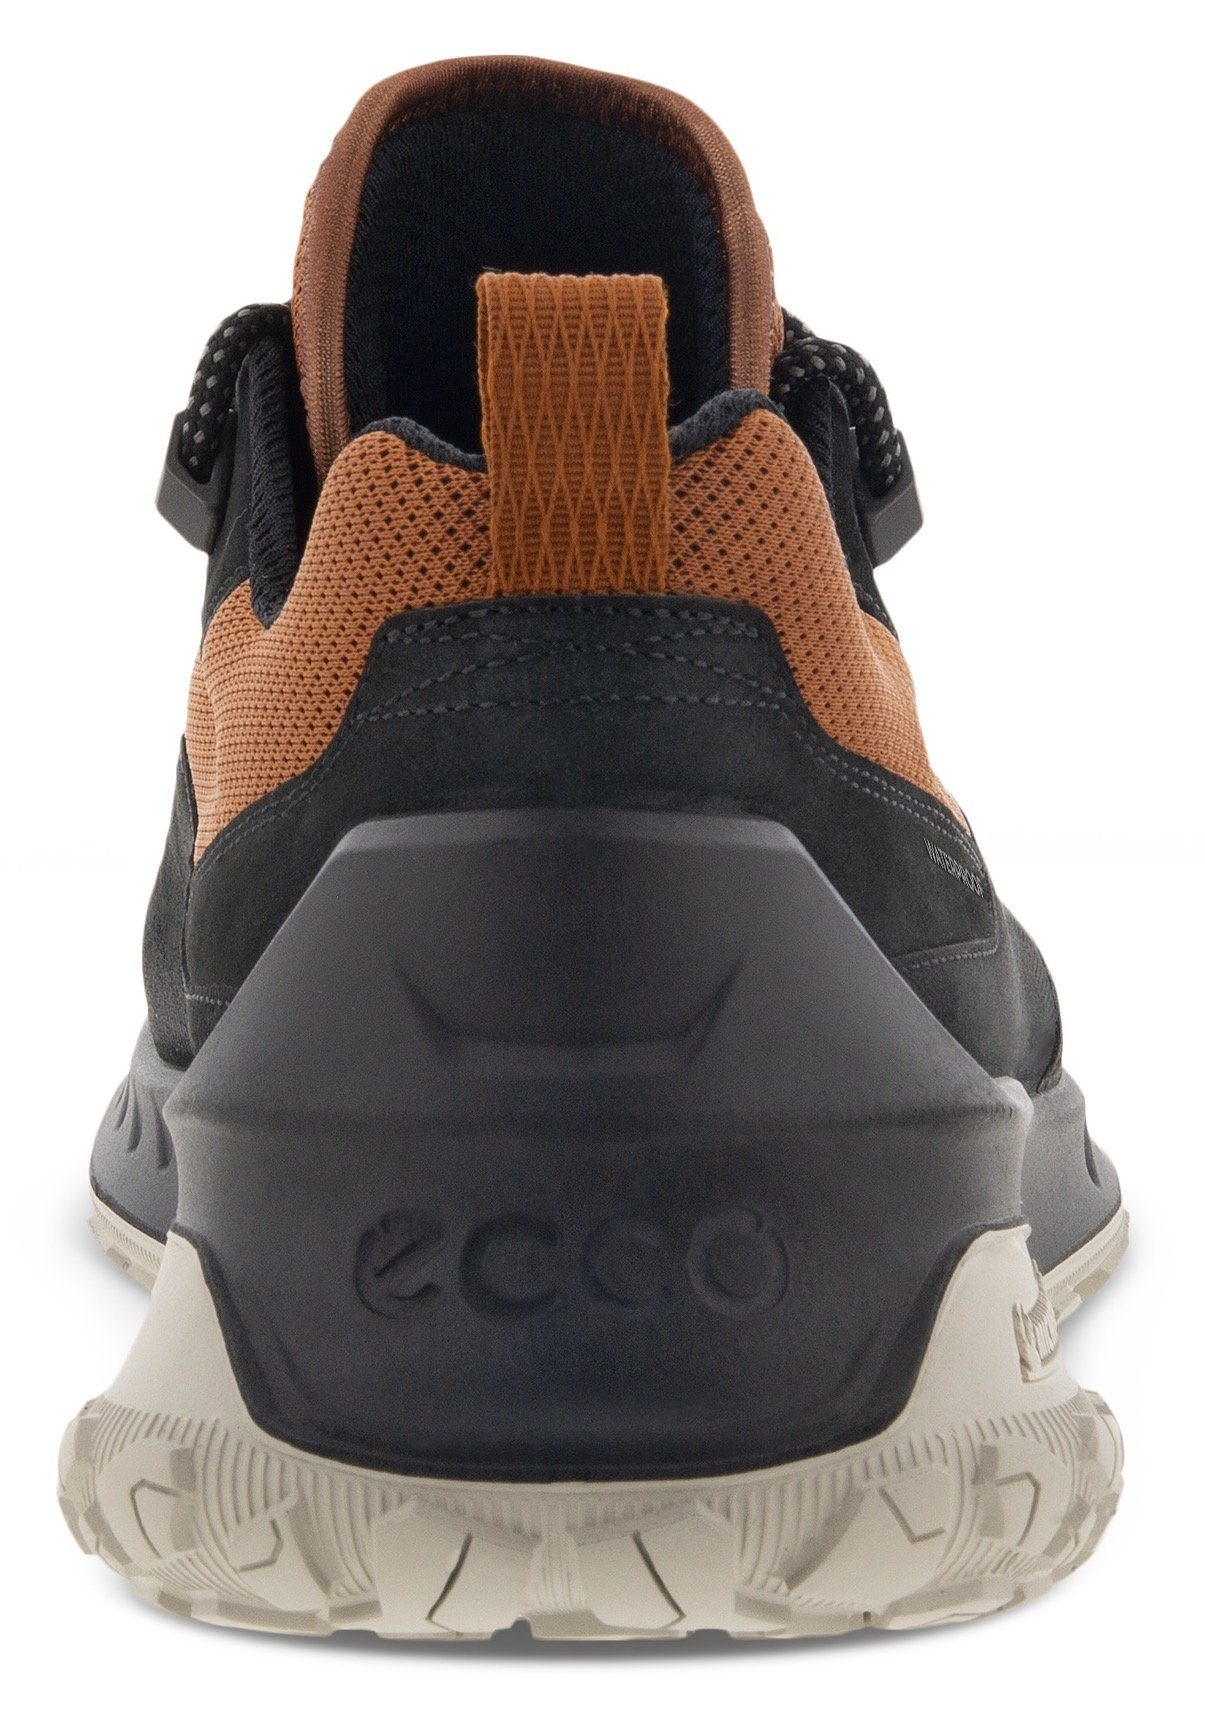 Sneaker cognac-schwarz M Ecco ULT-TRN mit Michelin-Technologie Laufsohle sportive